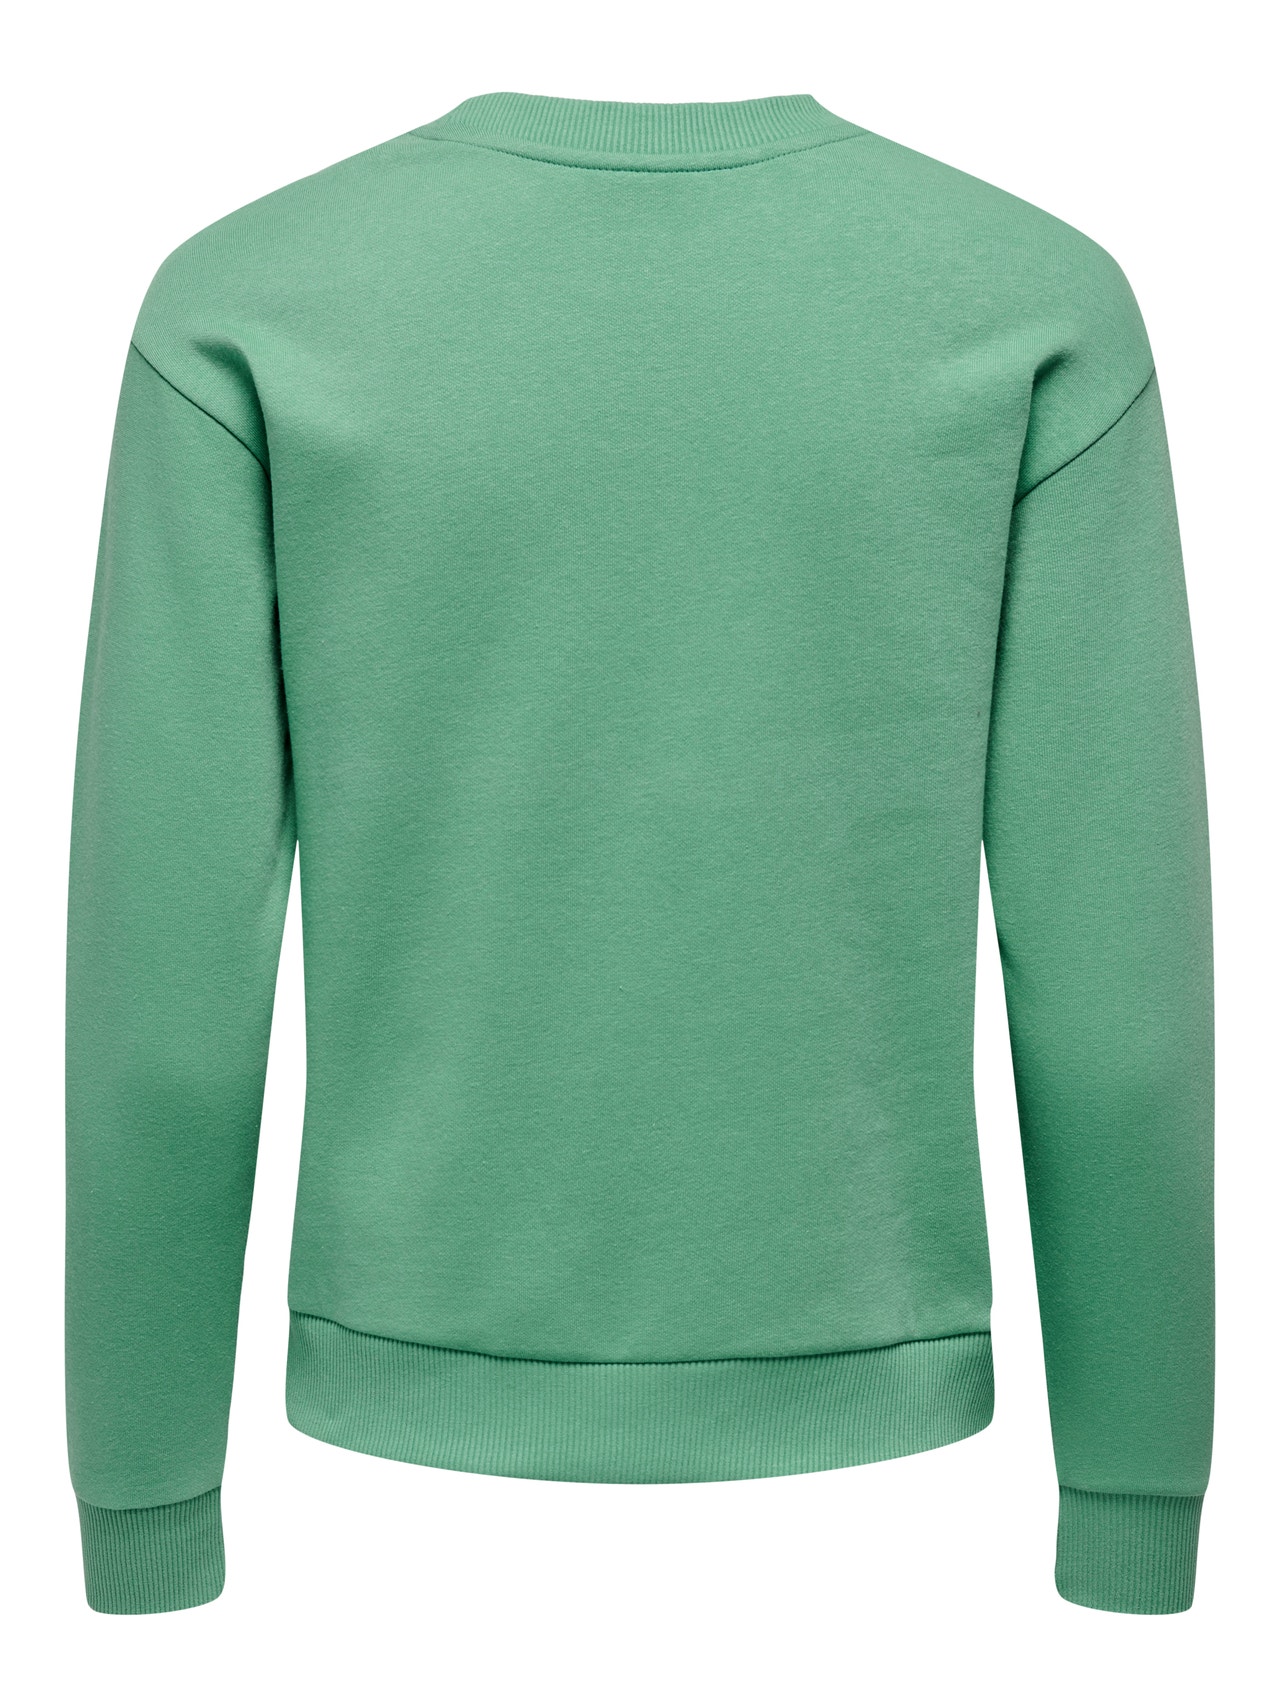 ONLY Normal geschnitten Rundhals Gerippte Ärmelbündchen Sweatshirt -Beryl Green - 15221015